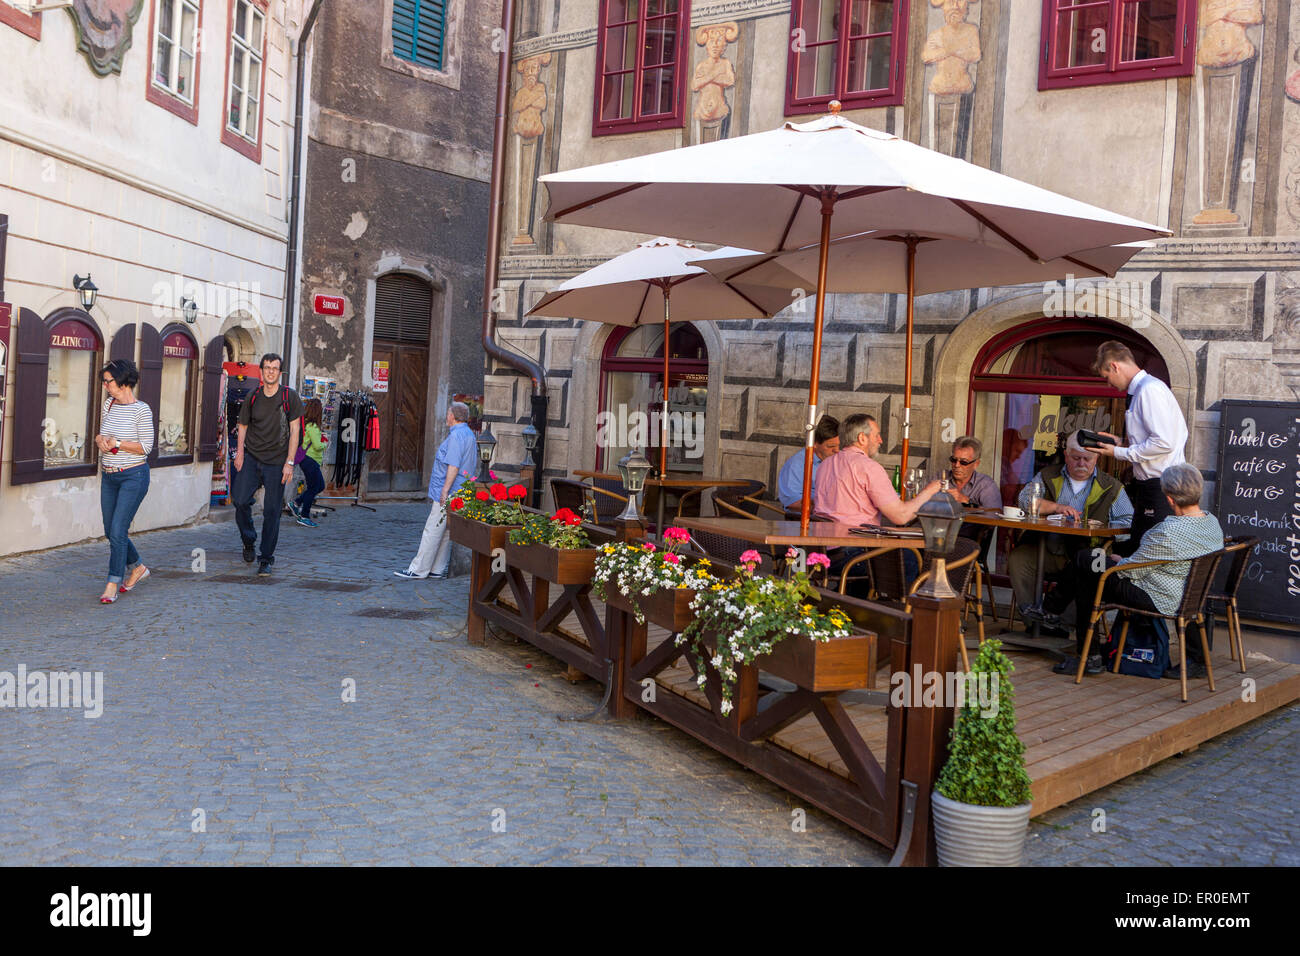 Les gens de la vieille ville historique de Cesky Krumlov, République tchèque Cafe Banque D'Images